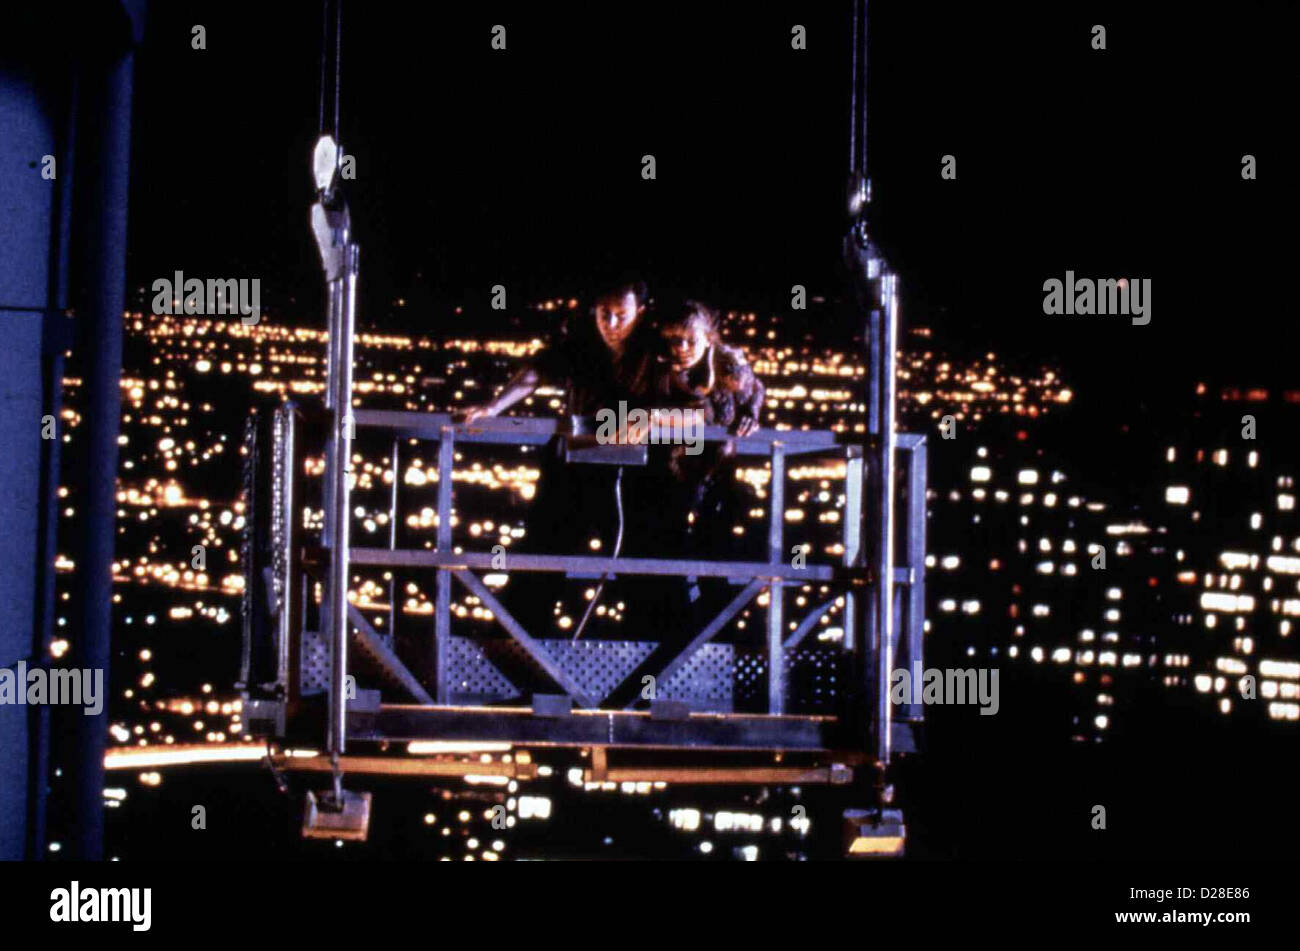 The Tower   Tower, The   Paul Reiser Tony Minot (Paul Reiser) in Szene *** Local Caption *** 1989  -- Stock Photo